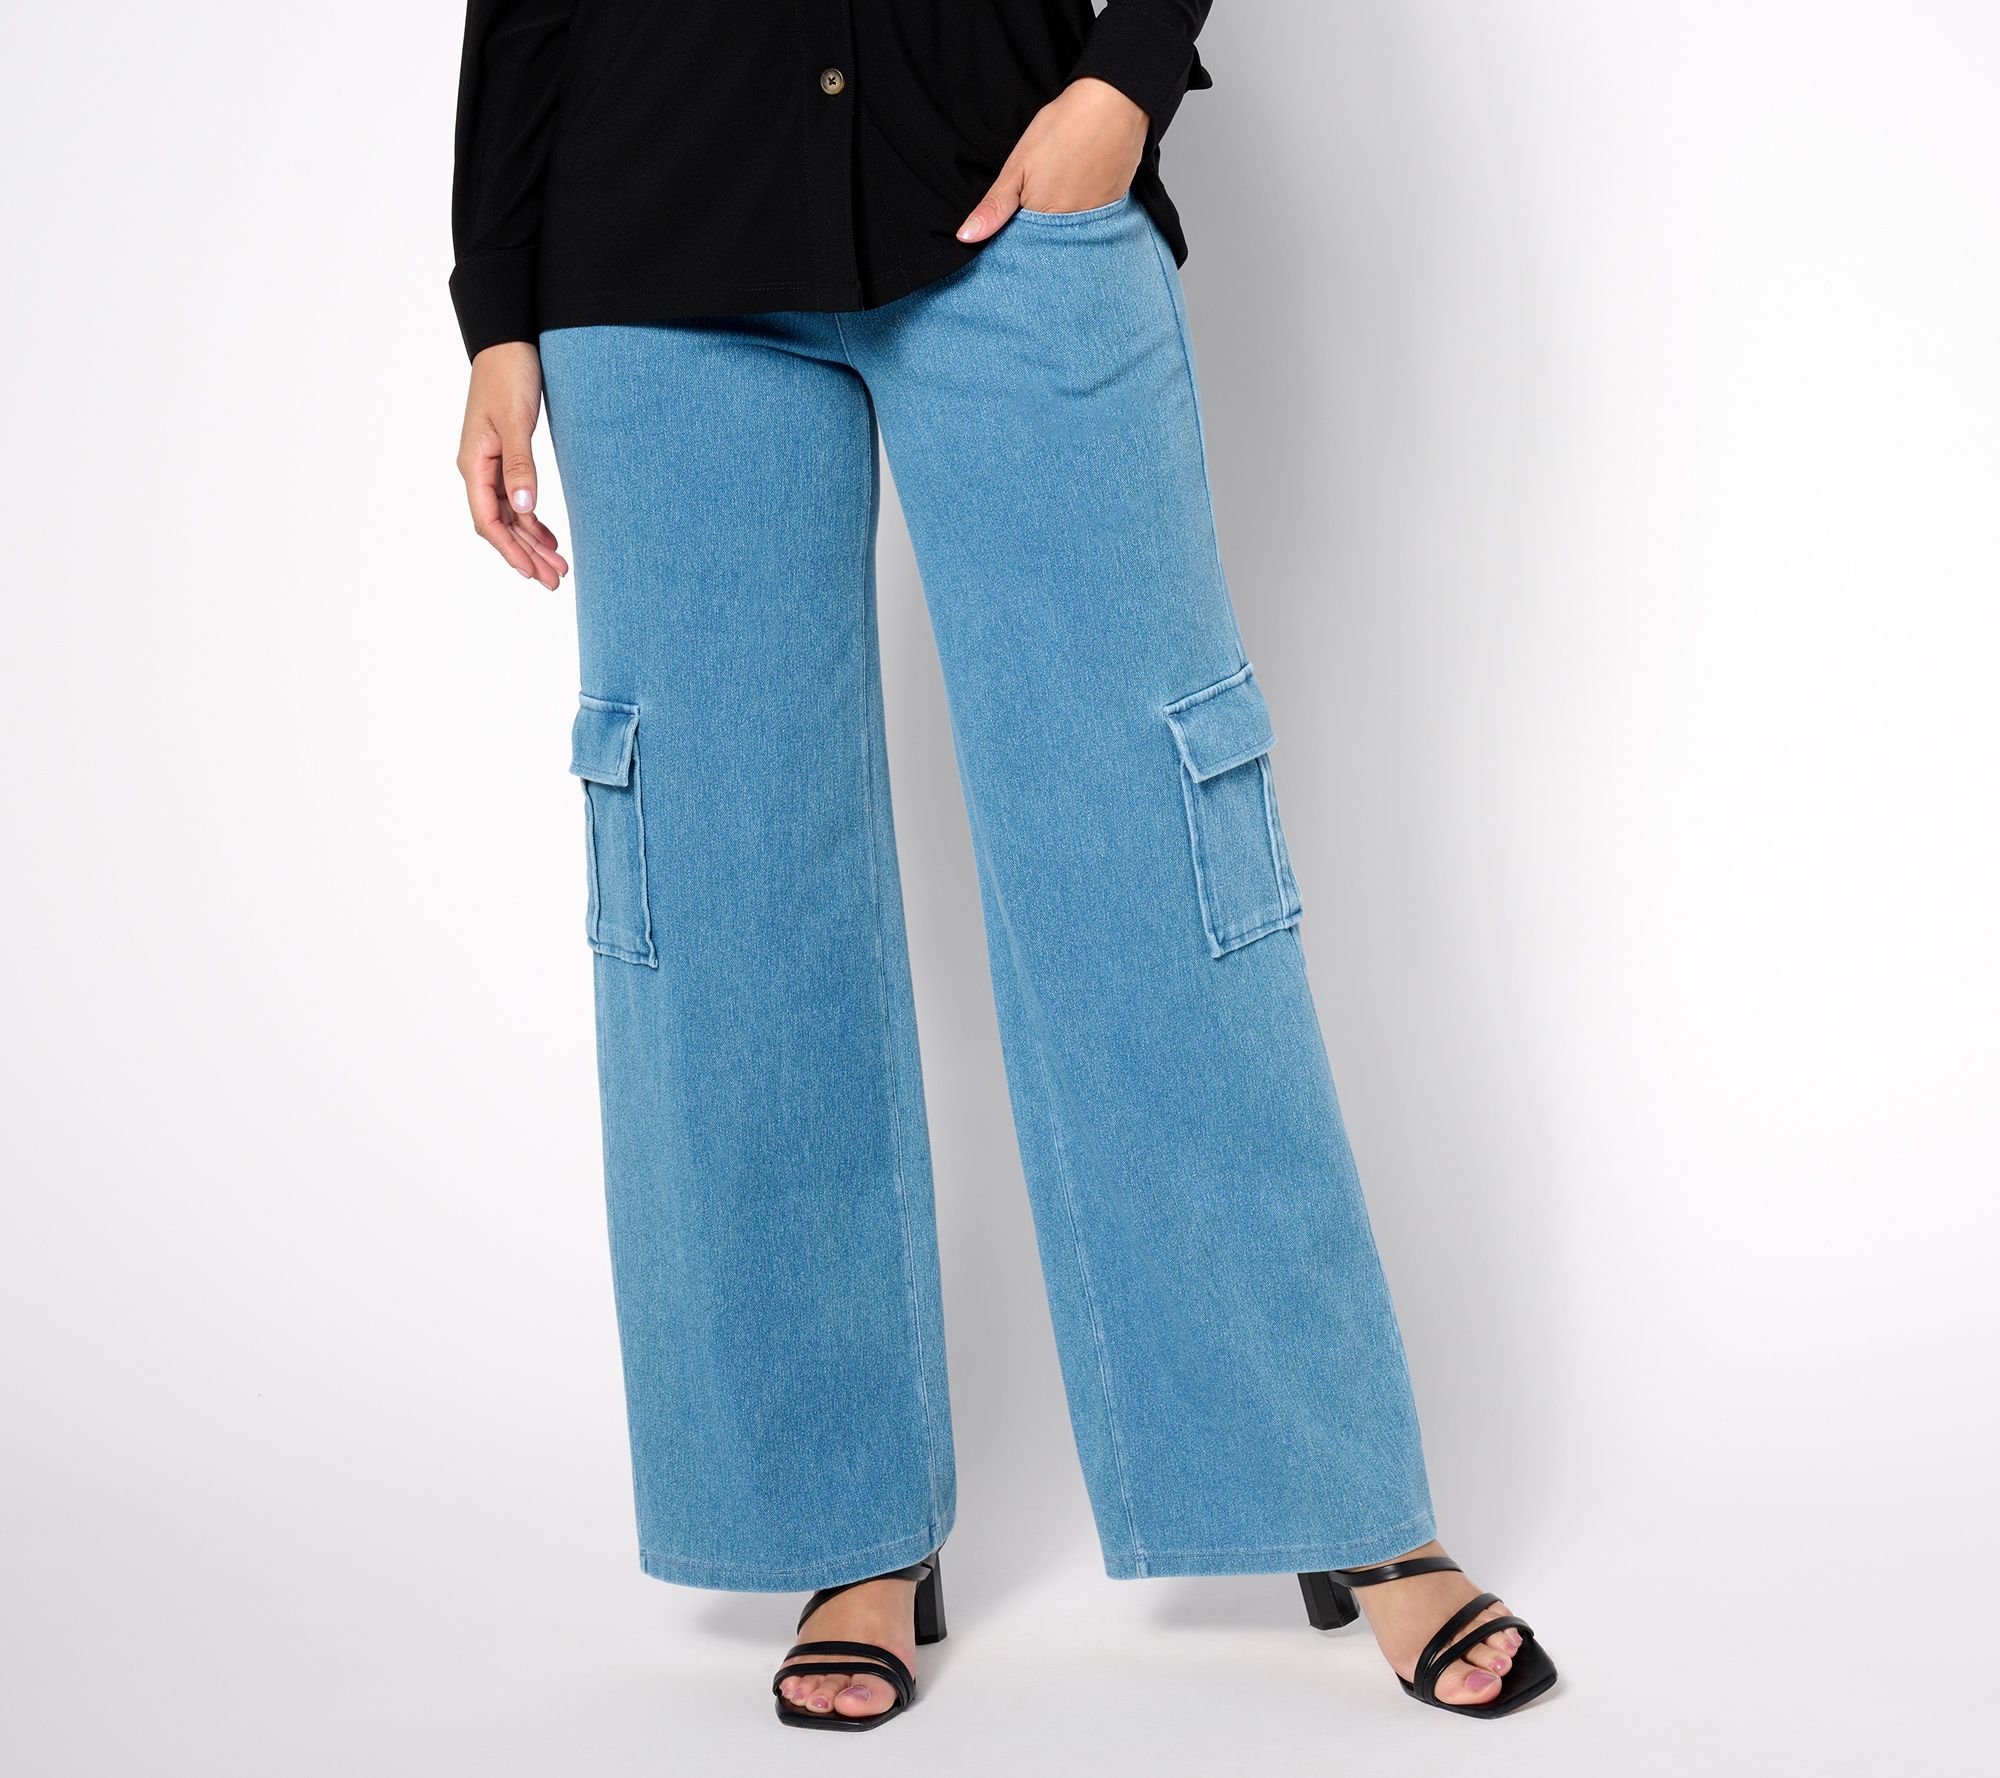 Plus Women's Super Soft Denim-Like Twill Jeans